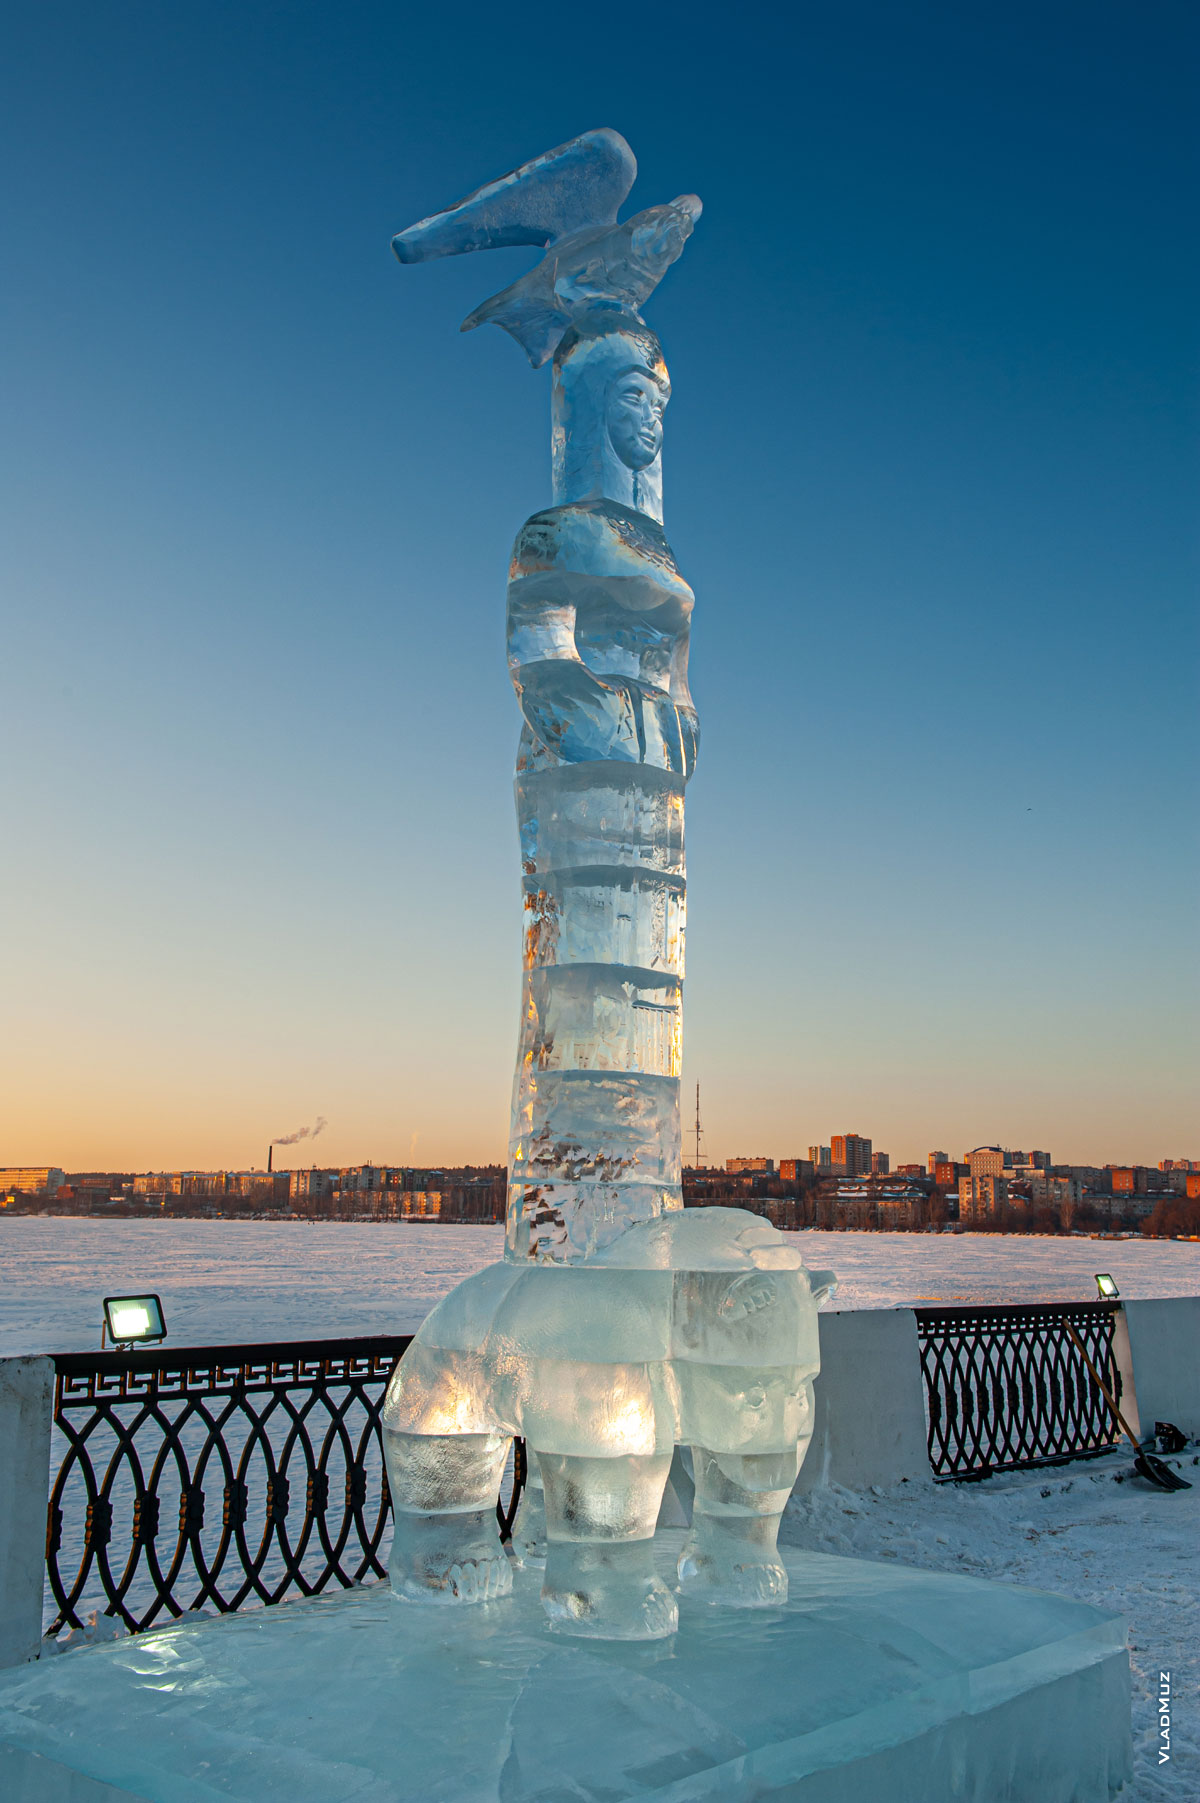 Ижевск, фестиваль «Удмуртский лед 2018»: фото ледовой скульптуры «Богиня леса»